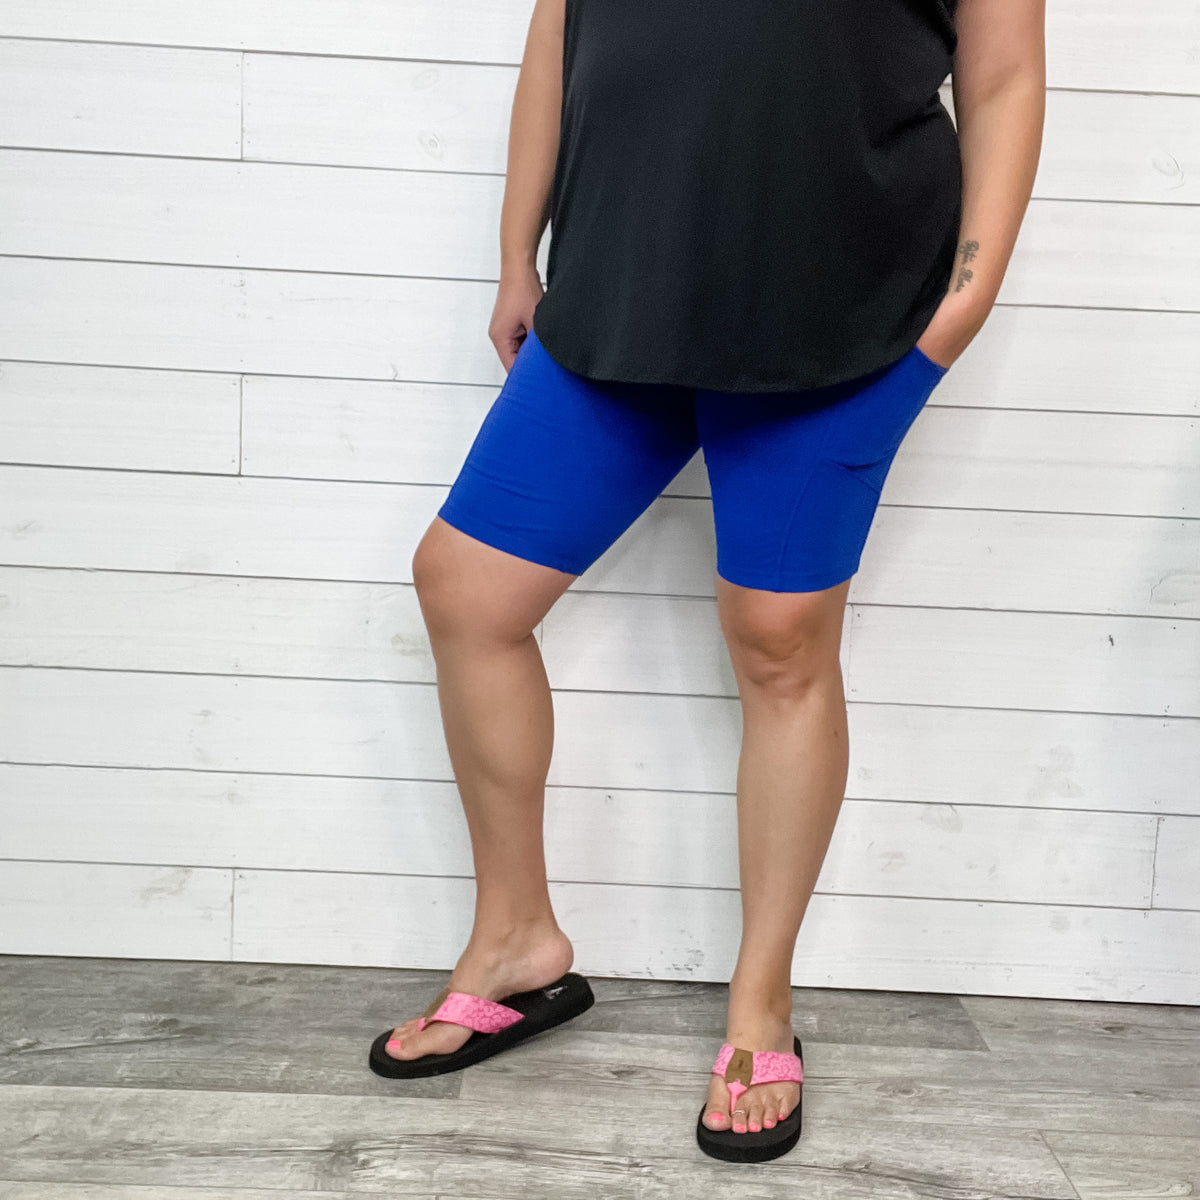 Cotton No Chub Rub Bike Shorts with Pockets (Bright Blue) – Lola Monroe  Boutique